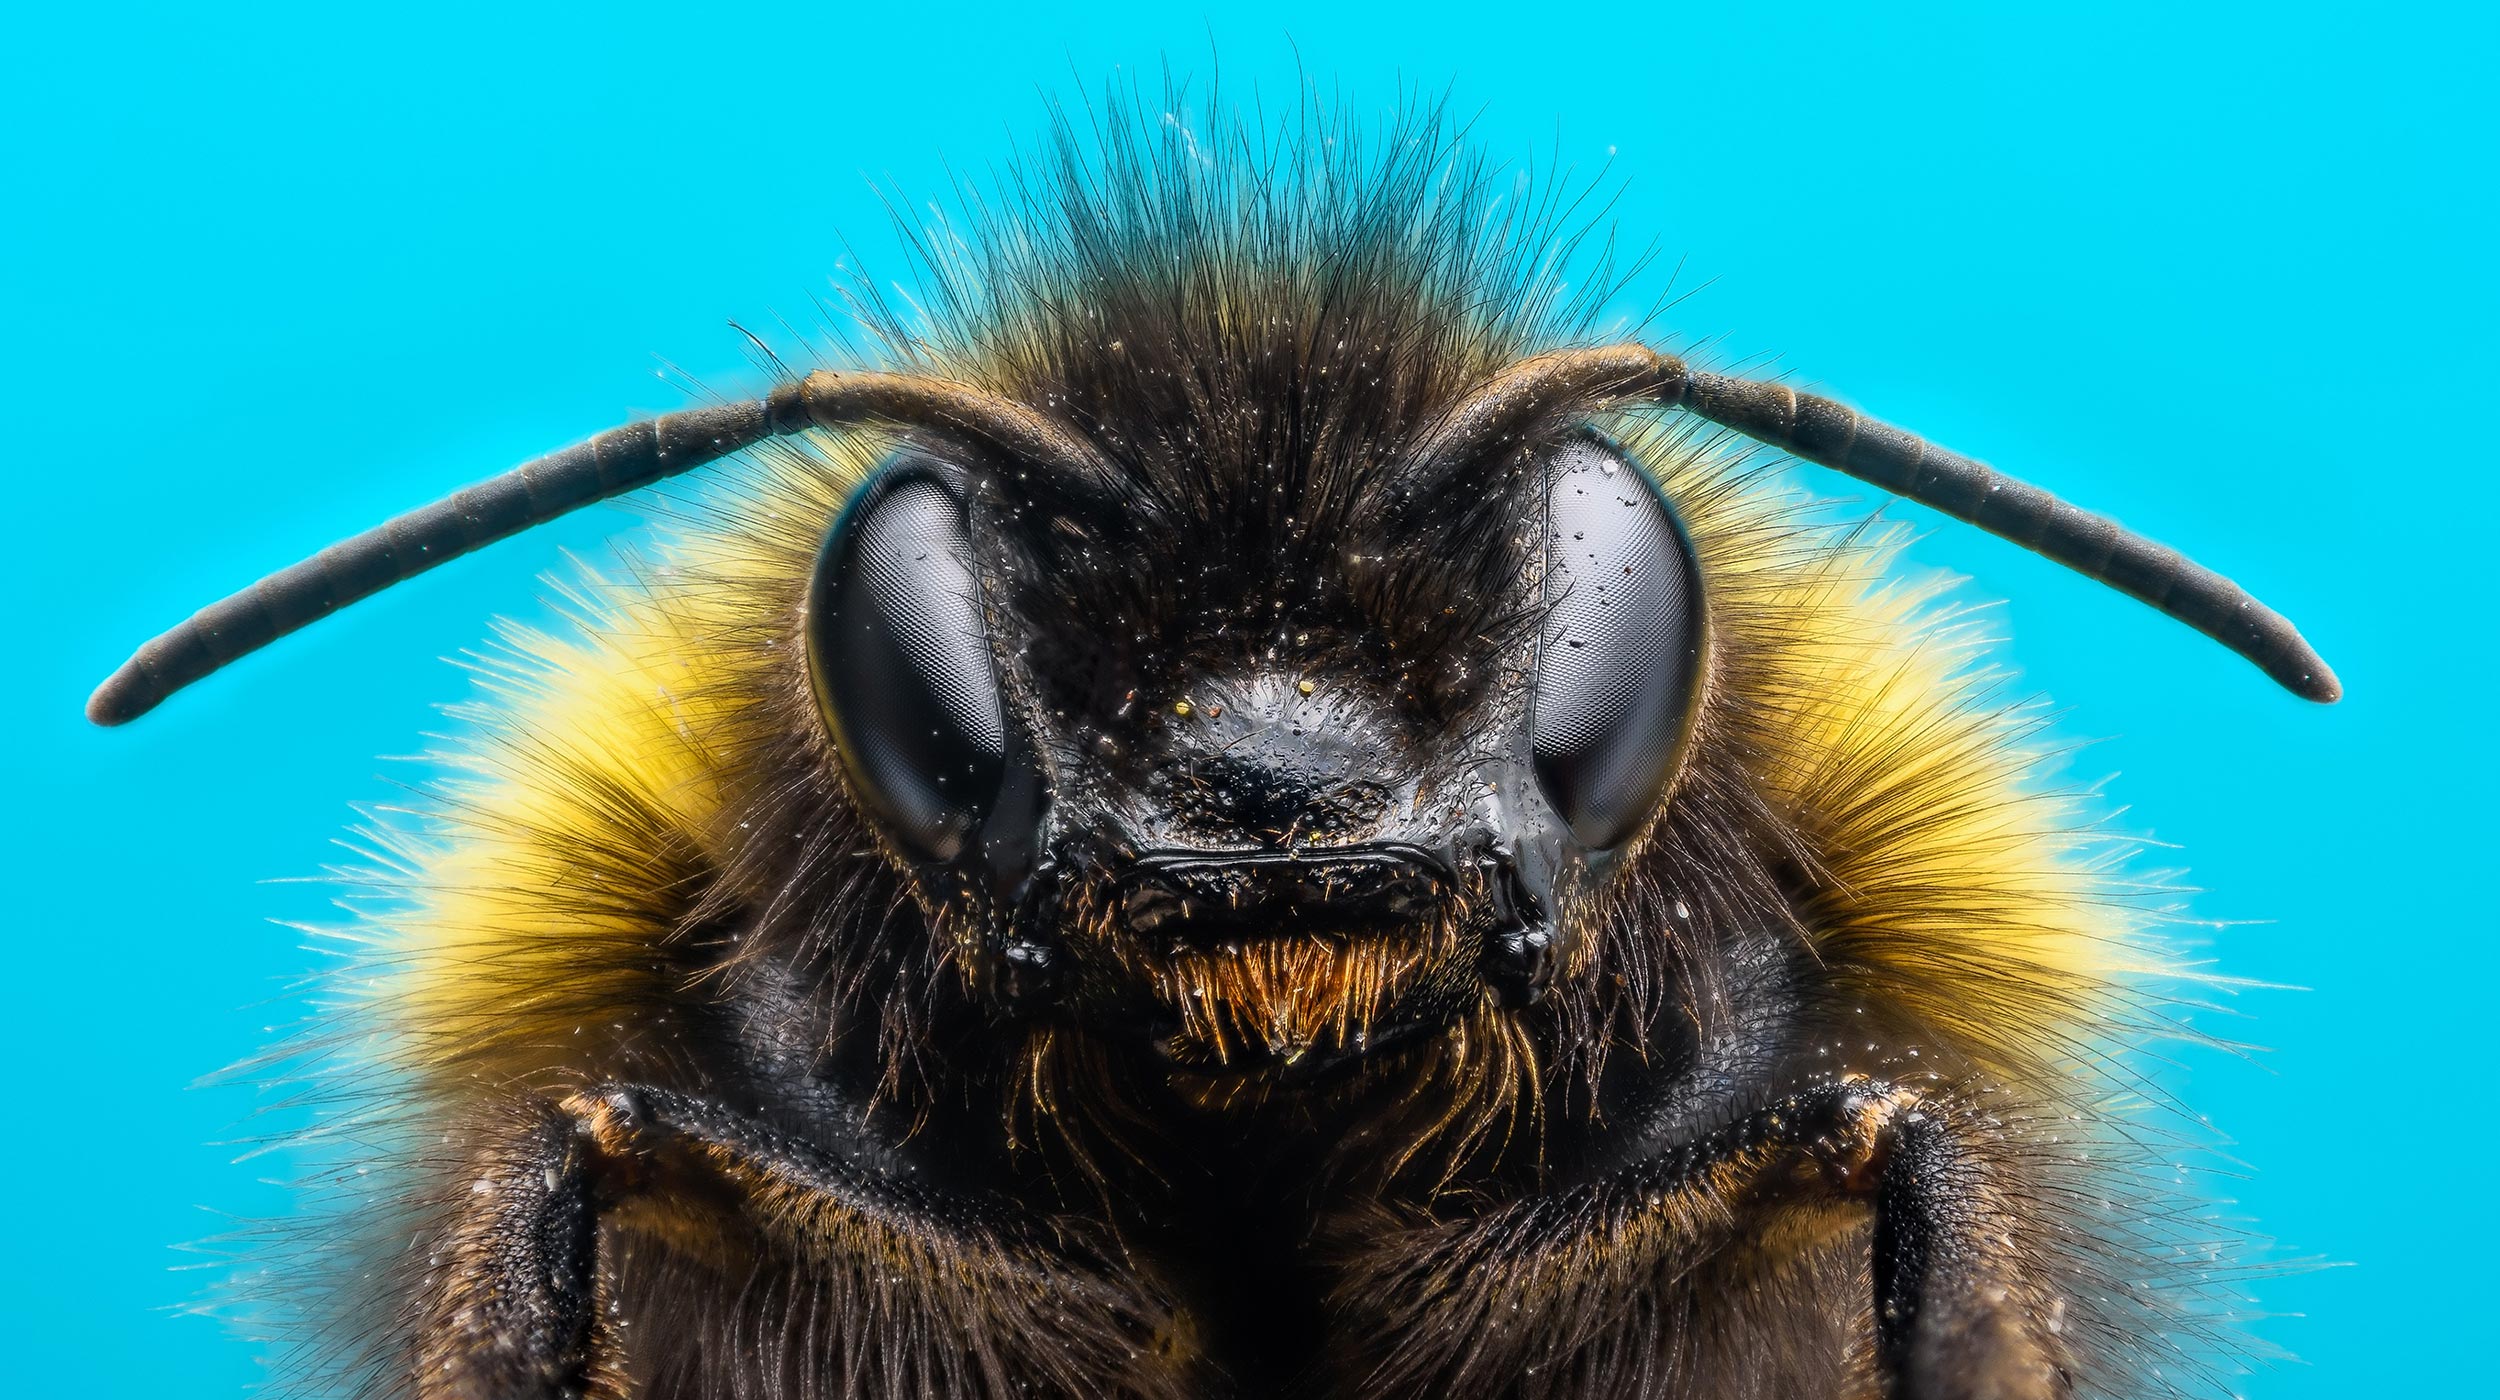 Los abejorros aprenden a resolver acertijos observando a otras abejas